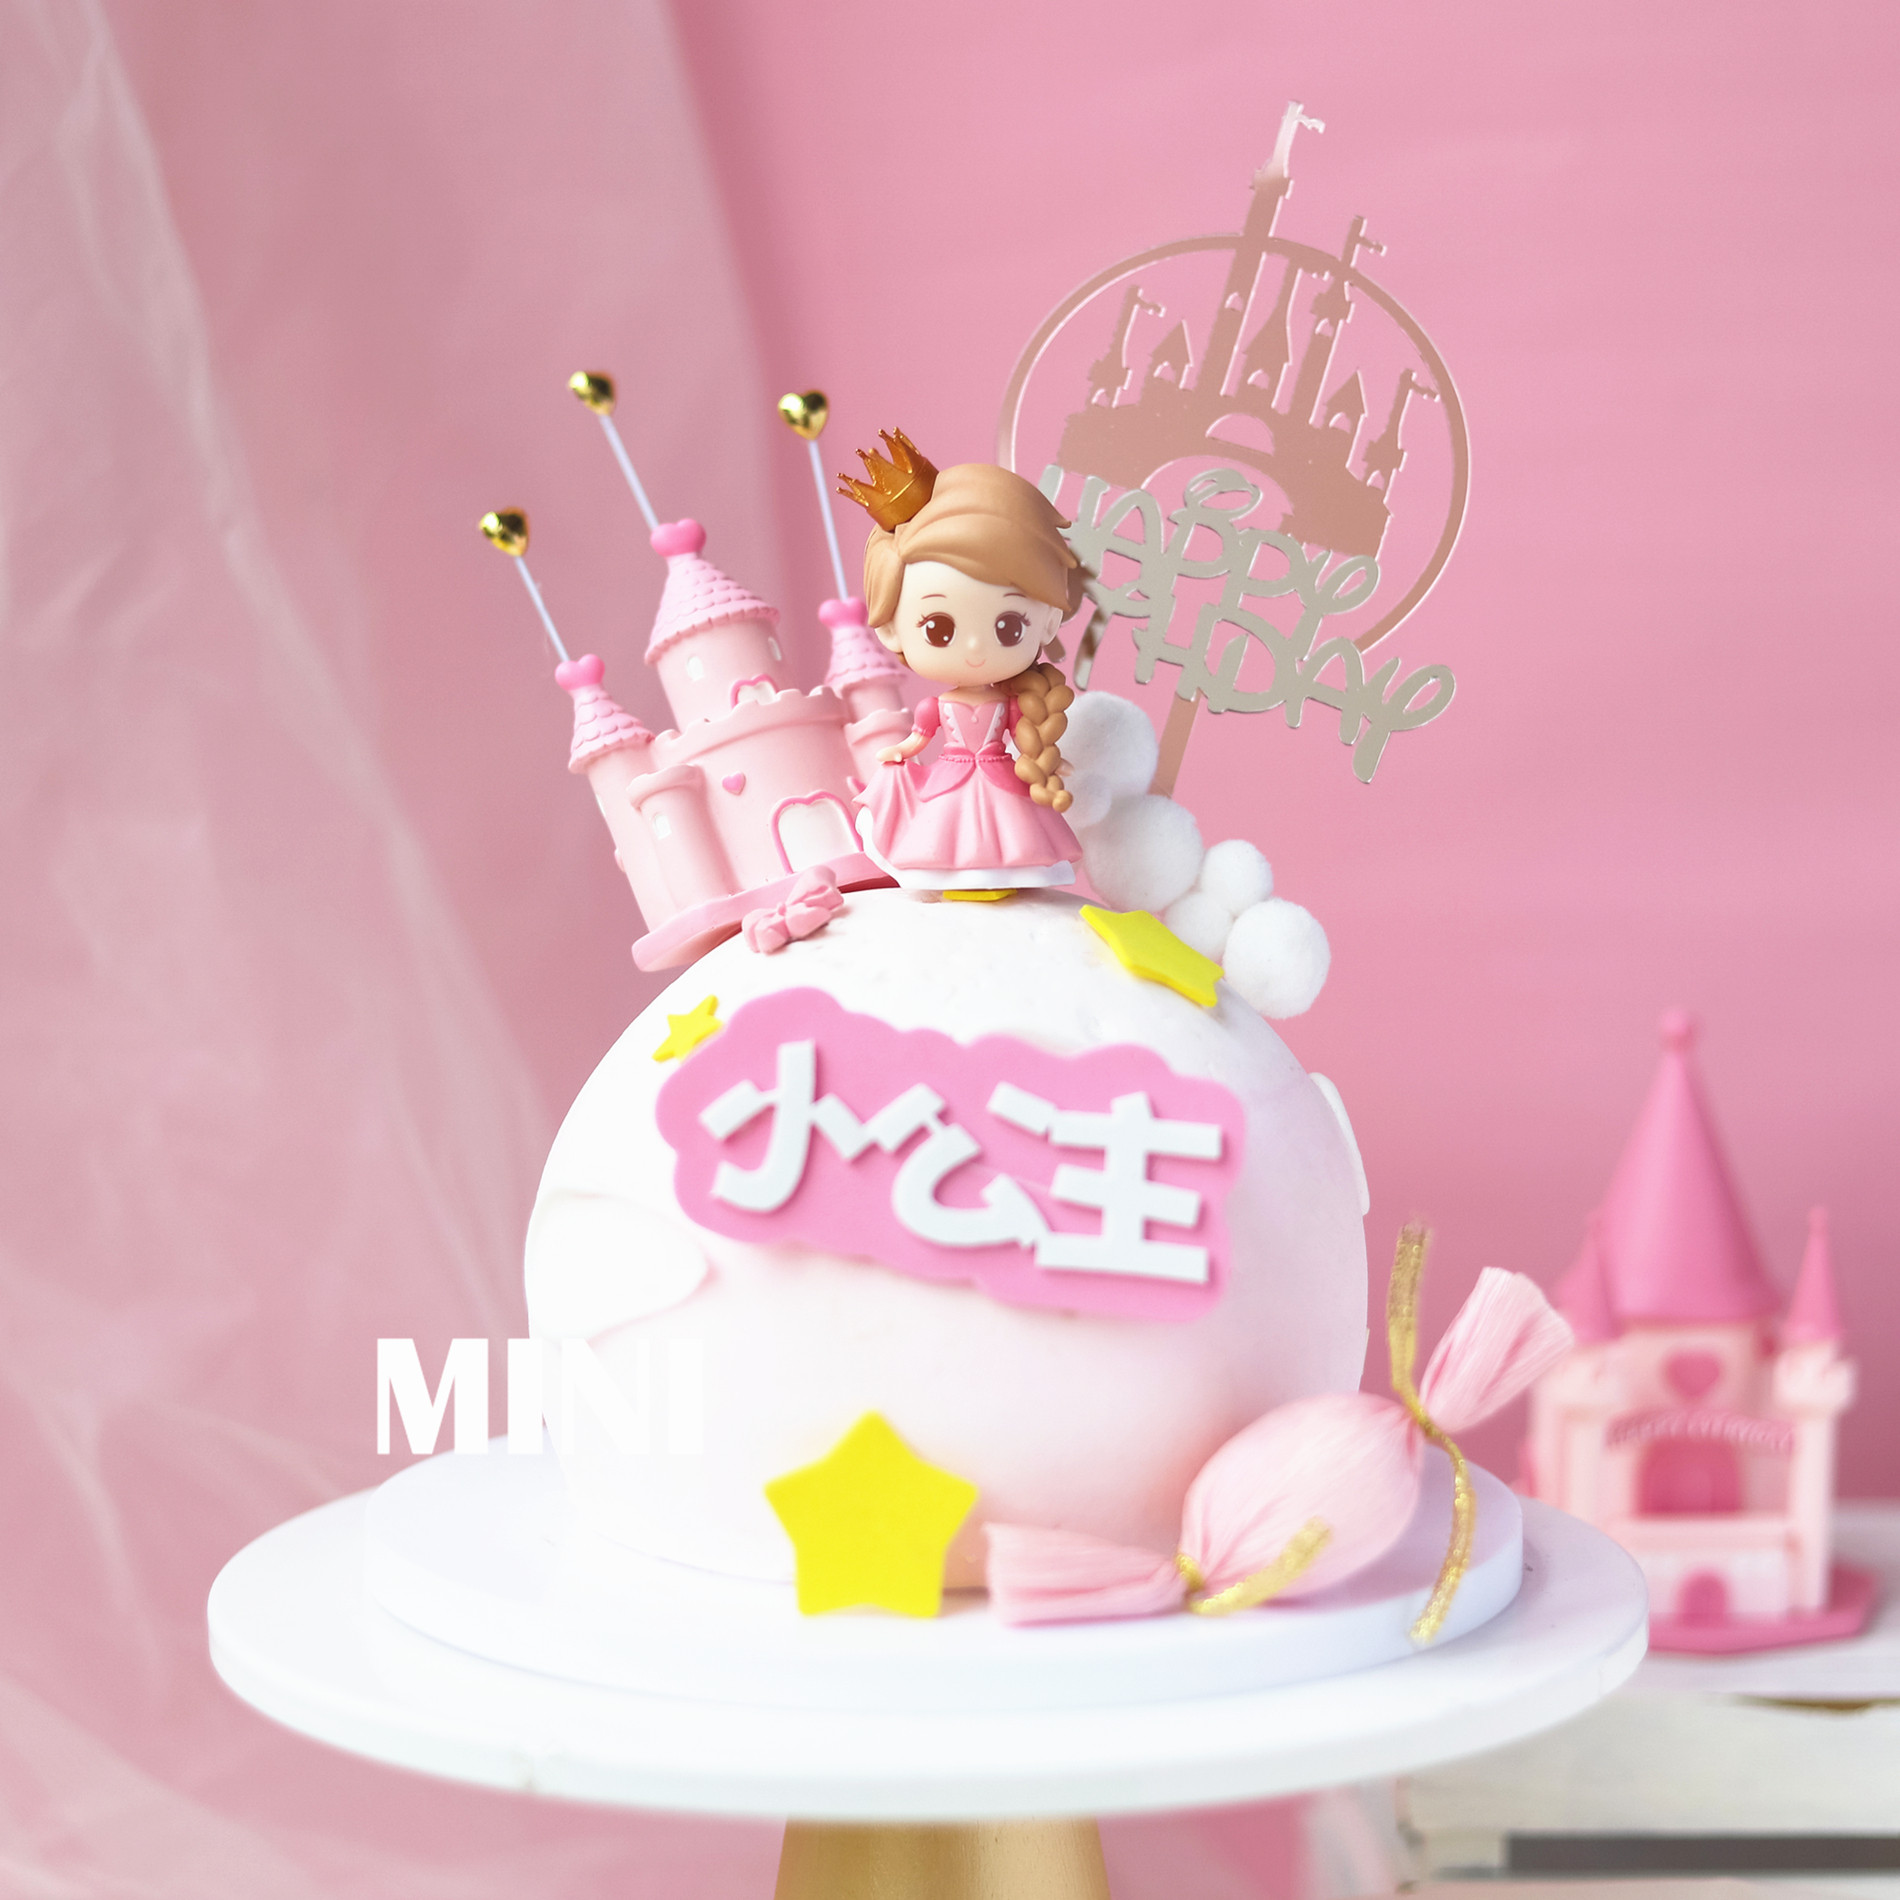 烘焙蛋糕装饰可爱卡通蒂娜公主玩偶摆件粉色城堡插件女孩主题装扮